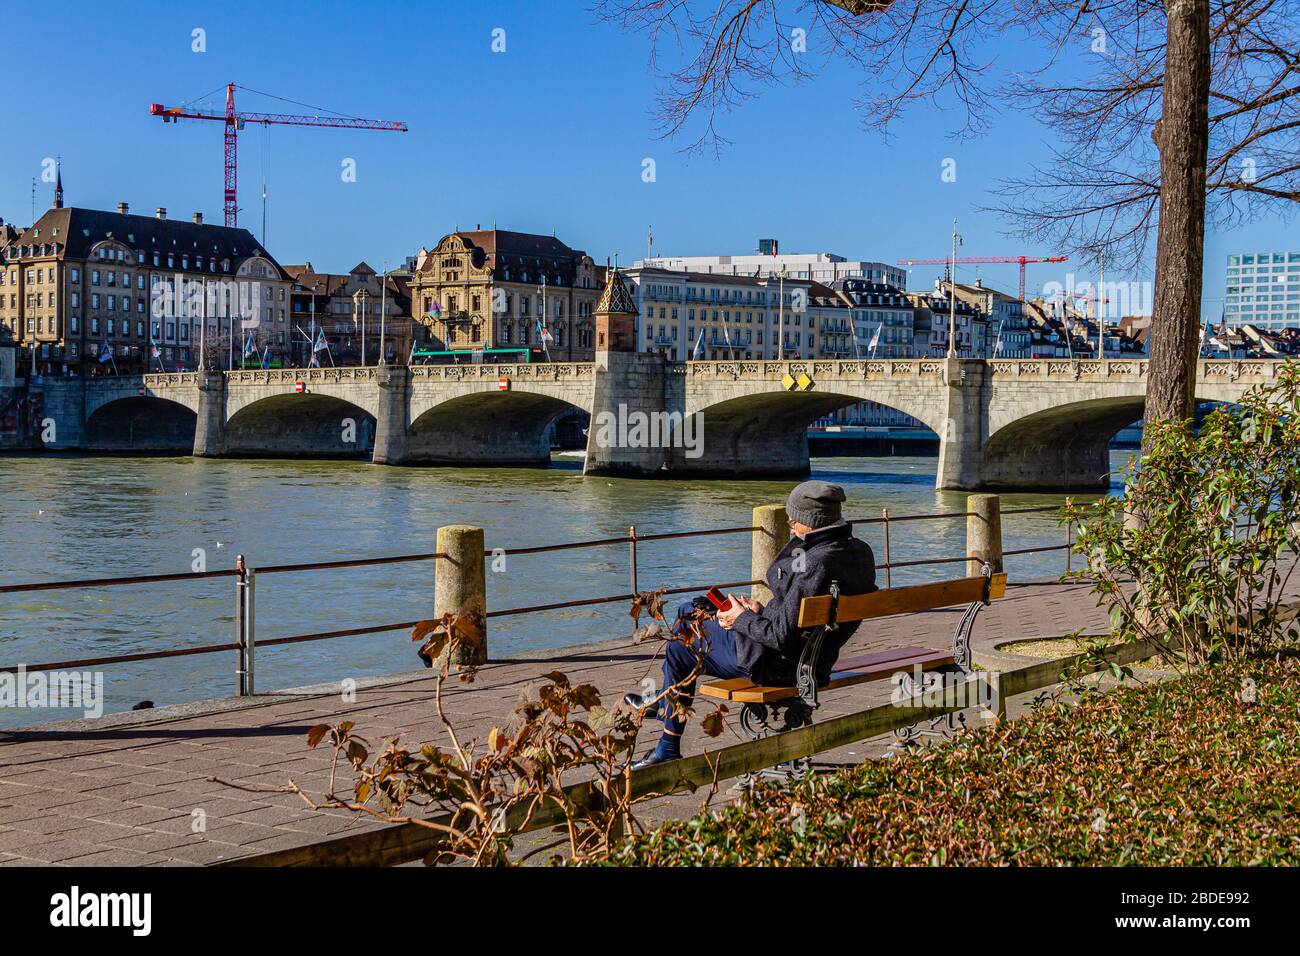 Une personne assise sur un banc à côté du Rhin et du pont historique du Moyen-Orient dans la ville de Bâle, en Suisse. Février 2020. Banque D'Images